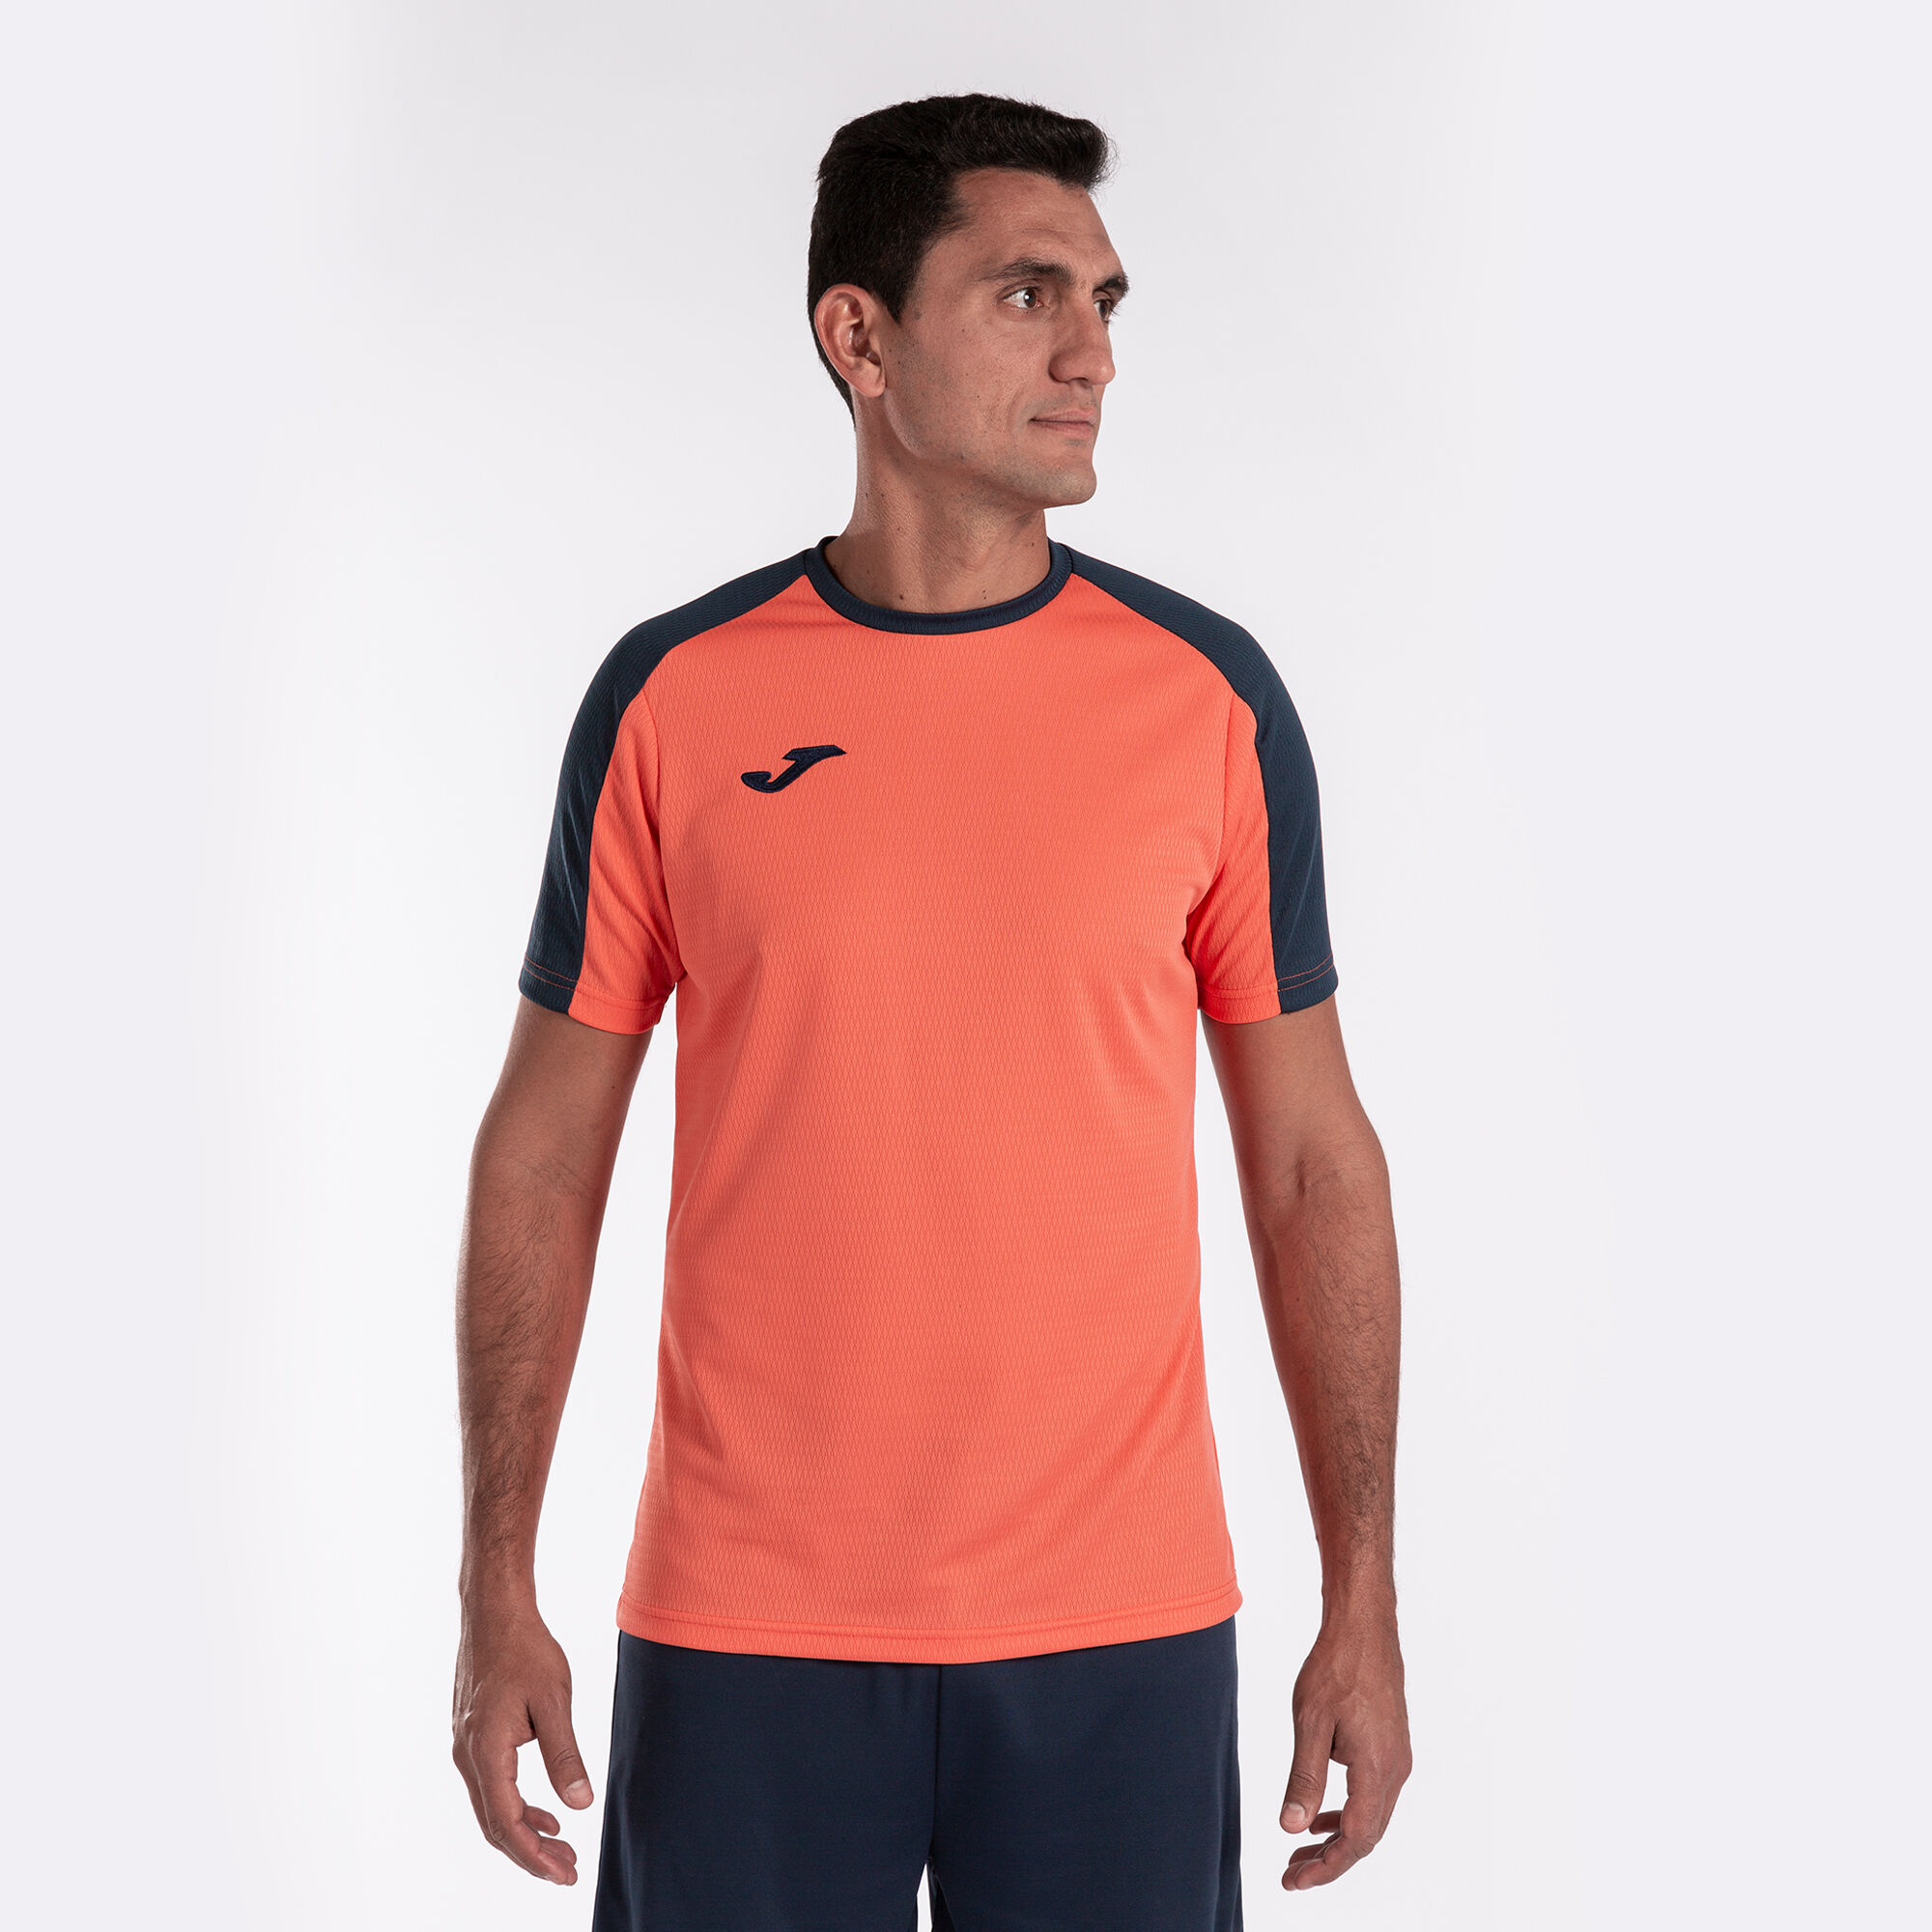 Camiseta manga corta hombre Eco Championship naranja flúor marino